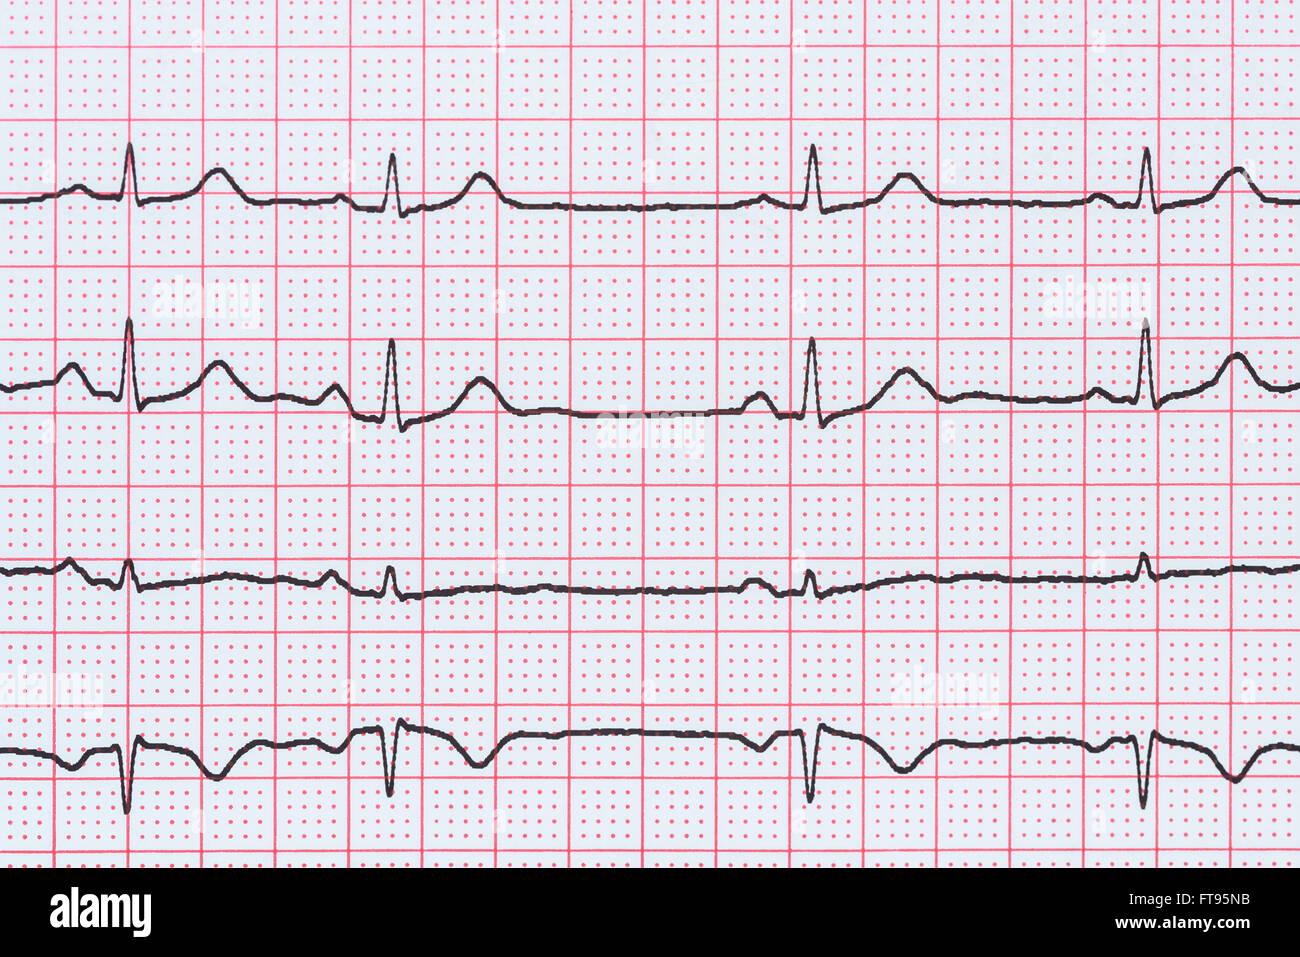 Sinusrhythmus Herz auf Elektrokardiogramm Rekord Papier zeigt normale P-Welle, PR und QT-Intervall und QRS-Komplex Stockfoto